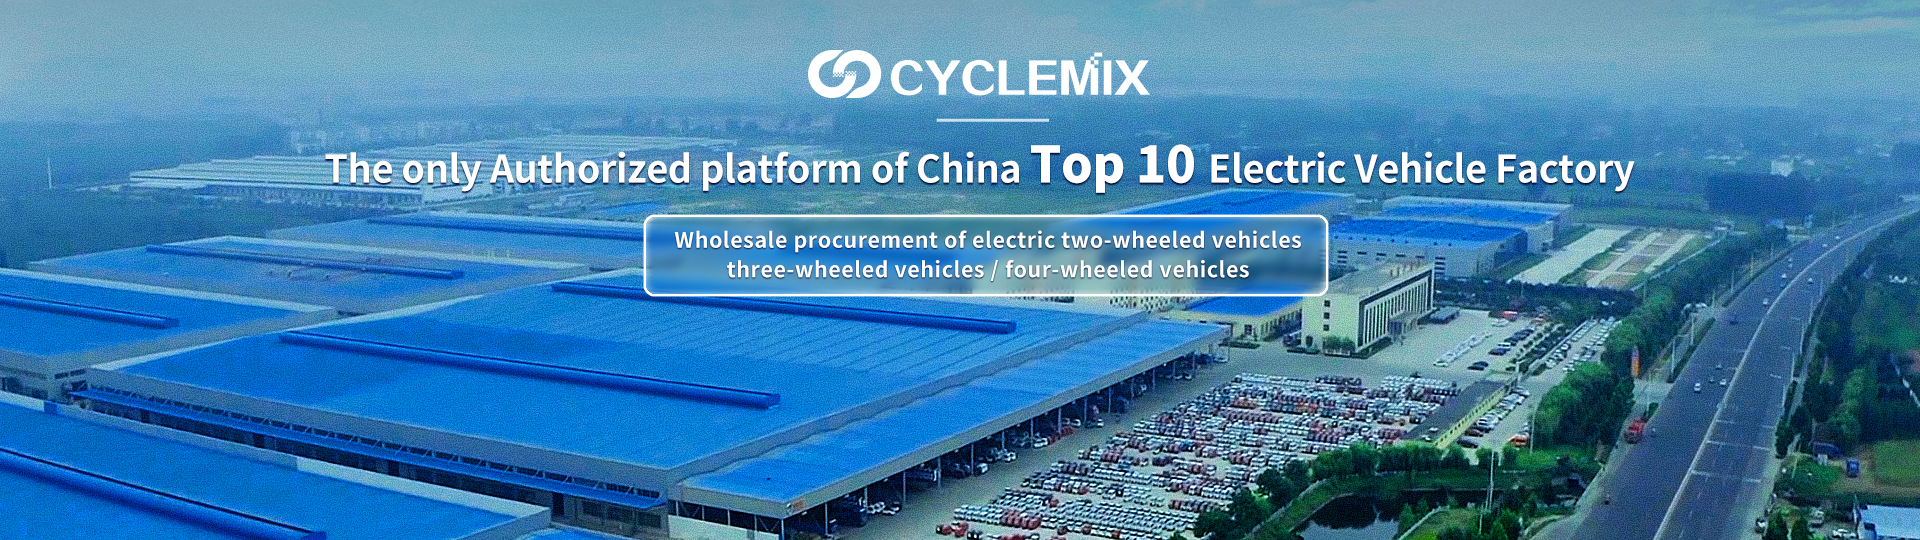 CYCLEMIX चीन शीर्ष 10 इलेक्ट्रिक वाहन कारखाना को एकमात्र आधिकारिक पार्टी / प्लेटफर्म